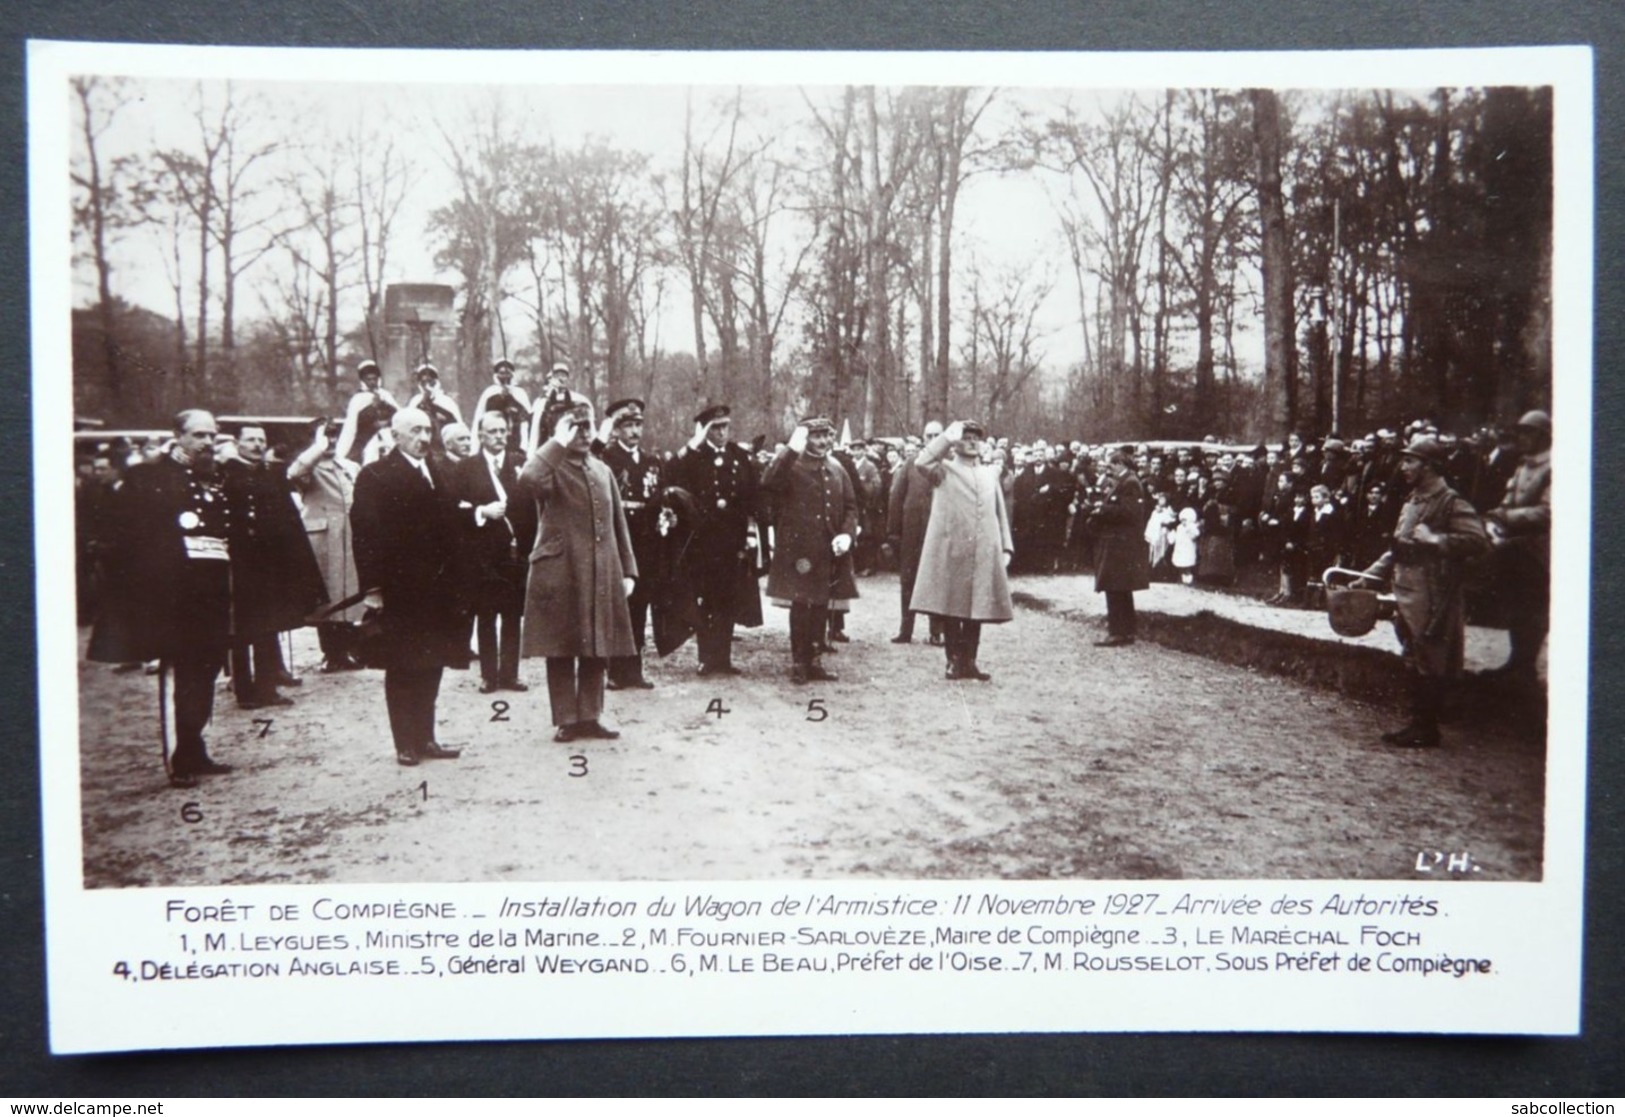 Forêt De Compiègne. Installation Du Wagon De L'armistice 11/11/1927 - Arrivée Des Autorités... L'H - War 1914-18